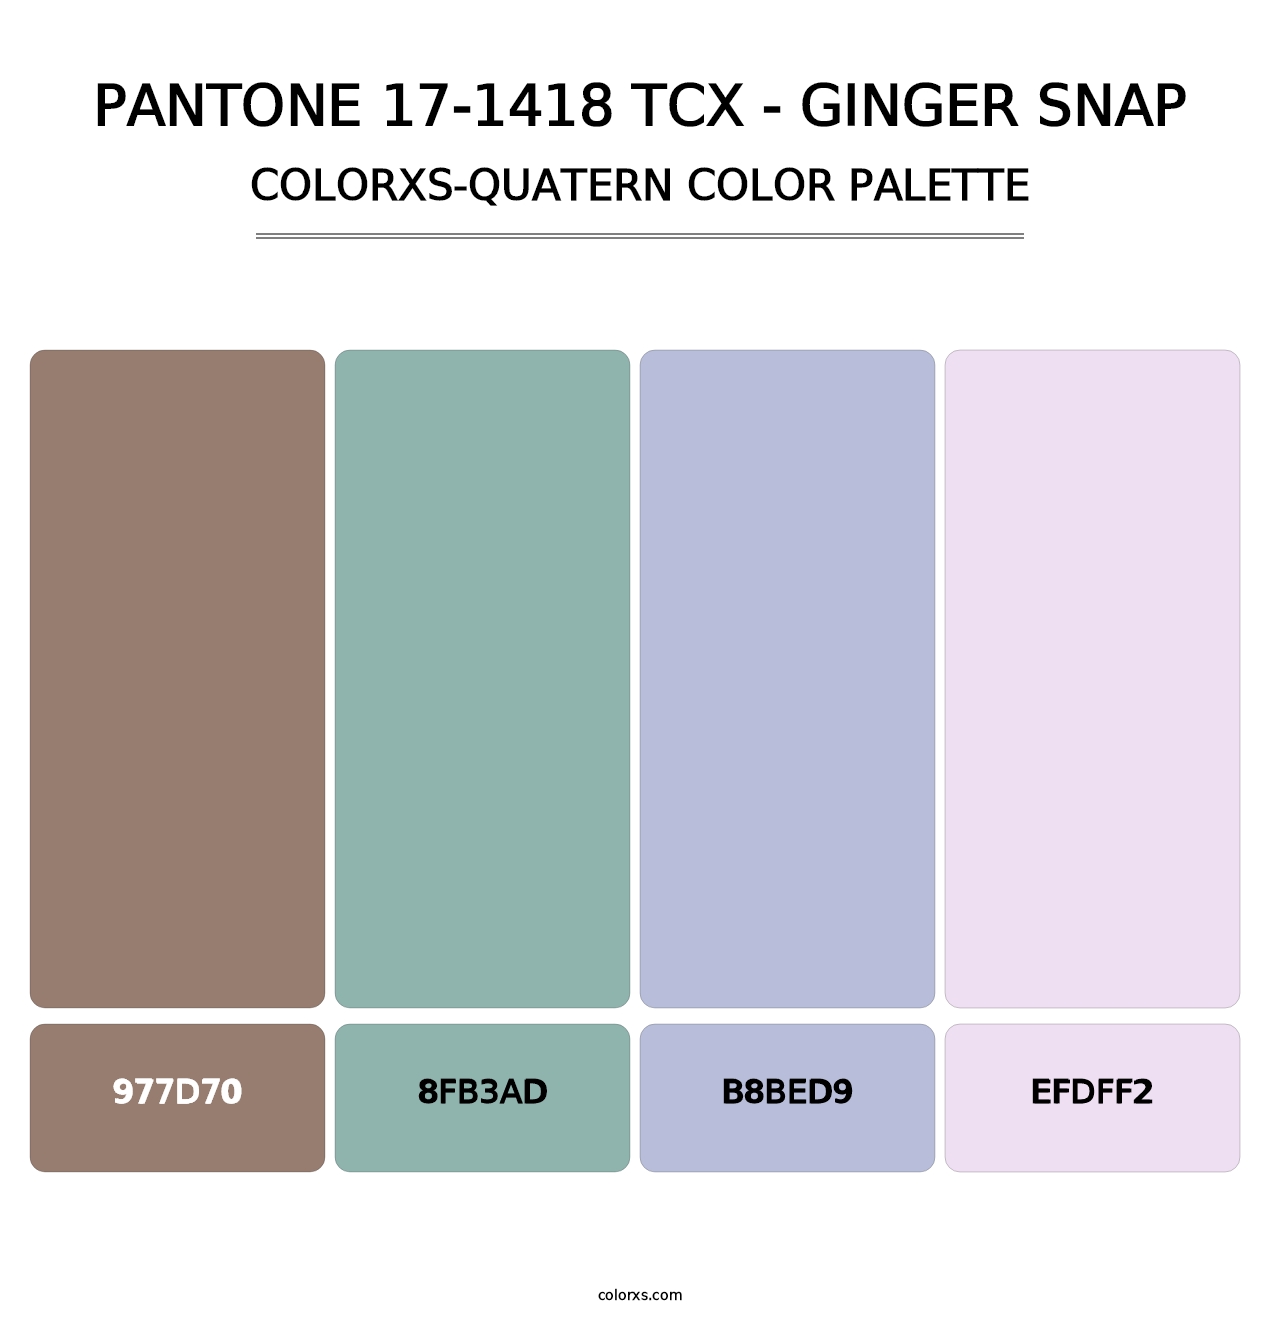 PANTONE 17-1418 TCX - Ginger Snap - Colorxs Quatern Palette